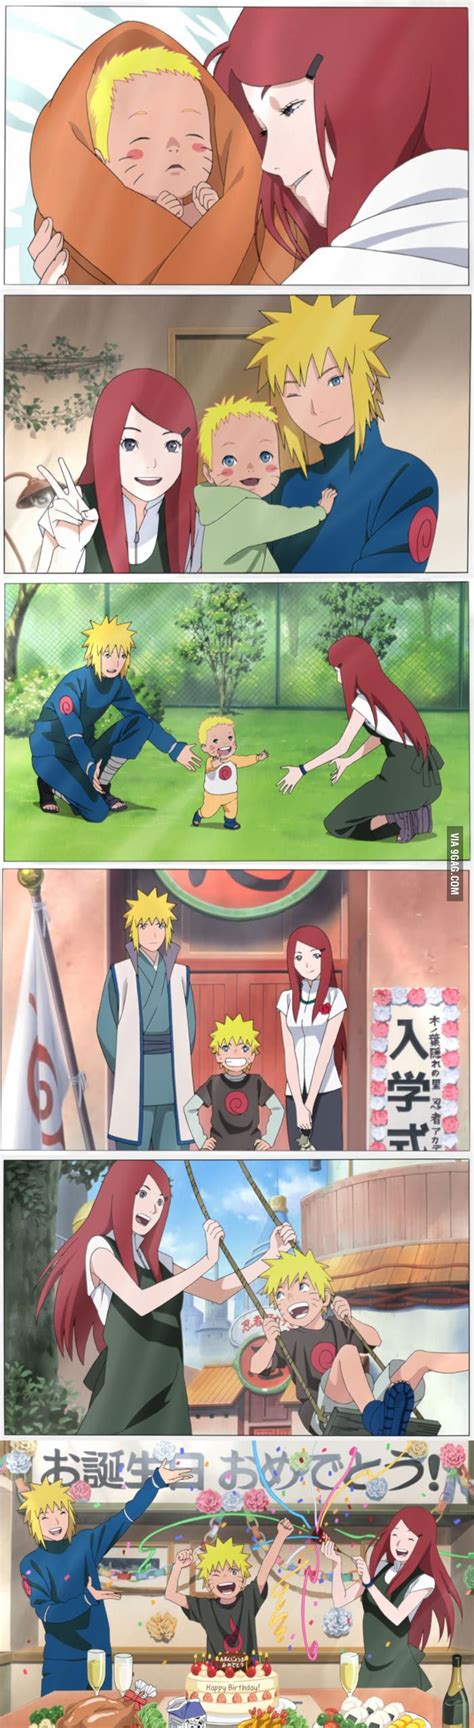 Grown Up Anime Naruto Characters